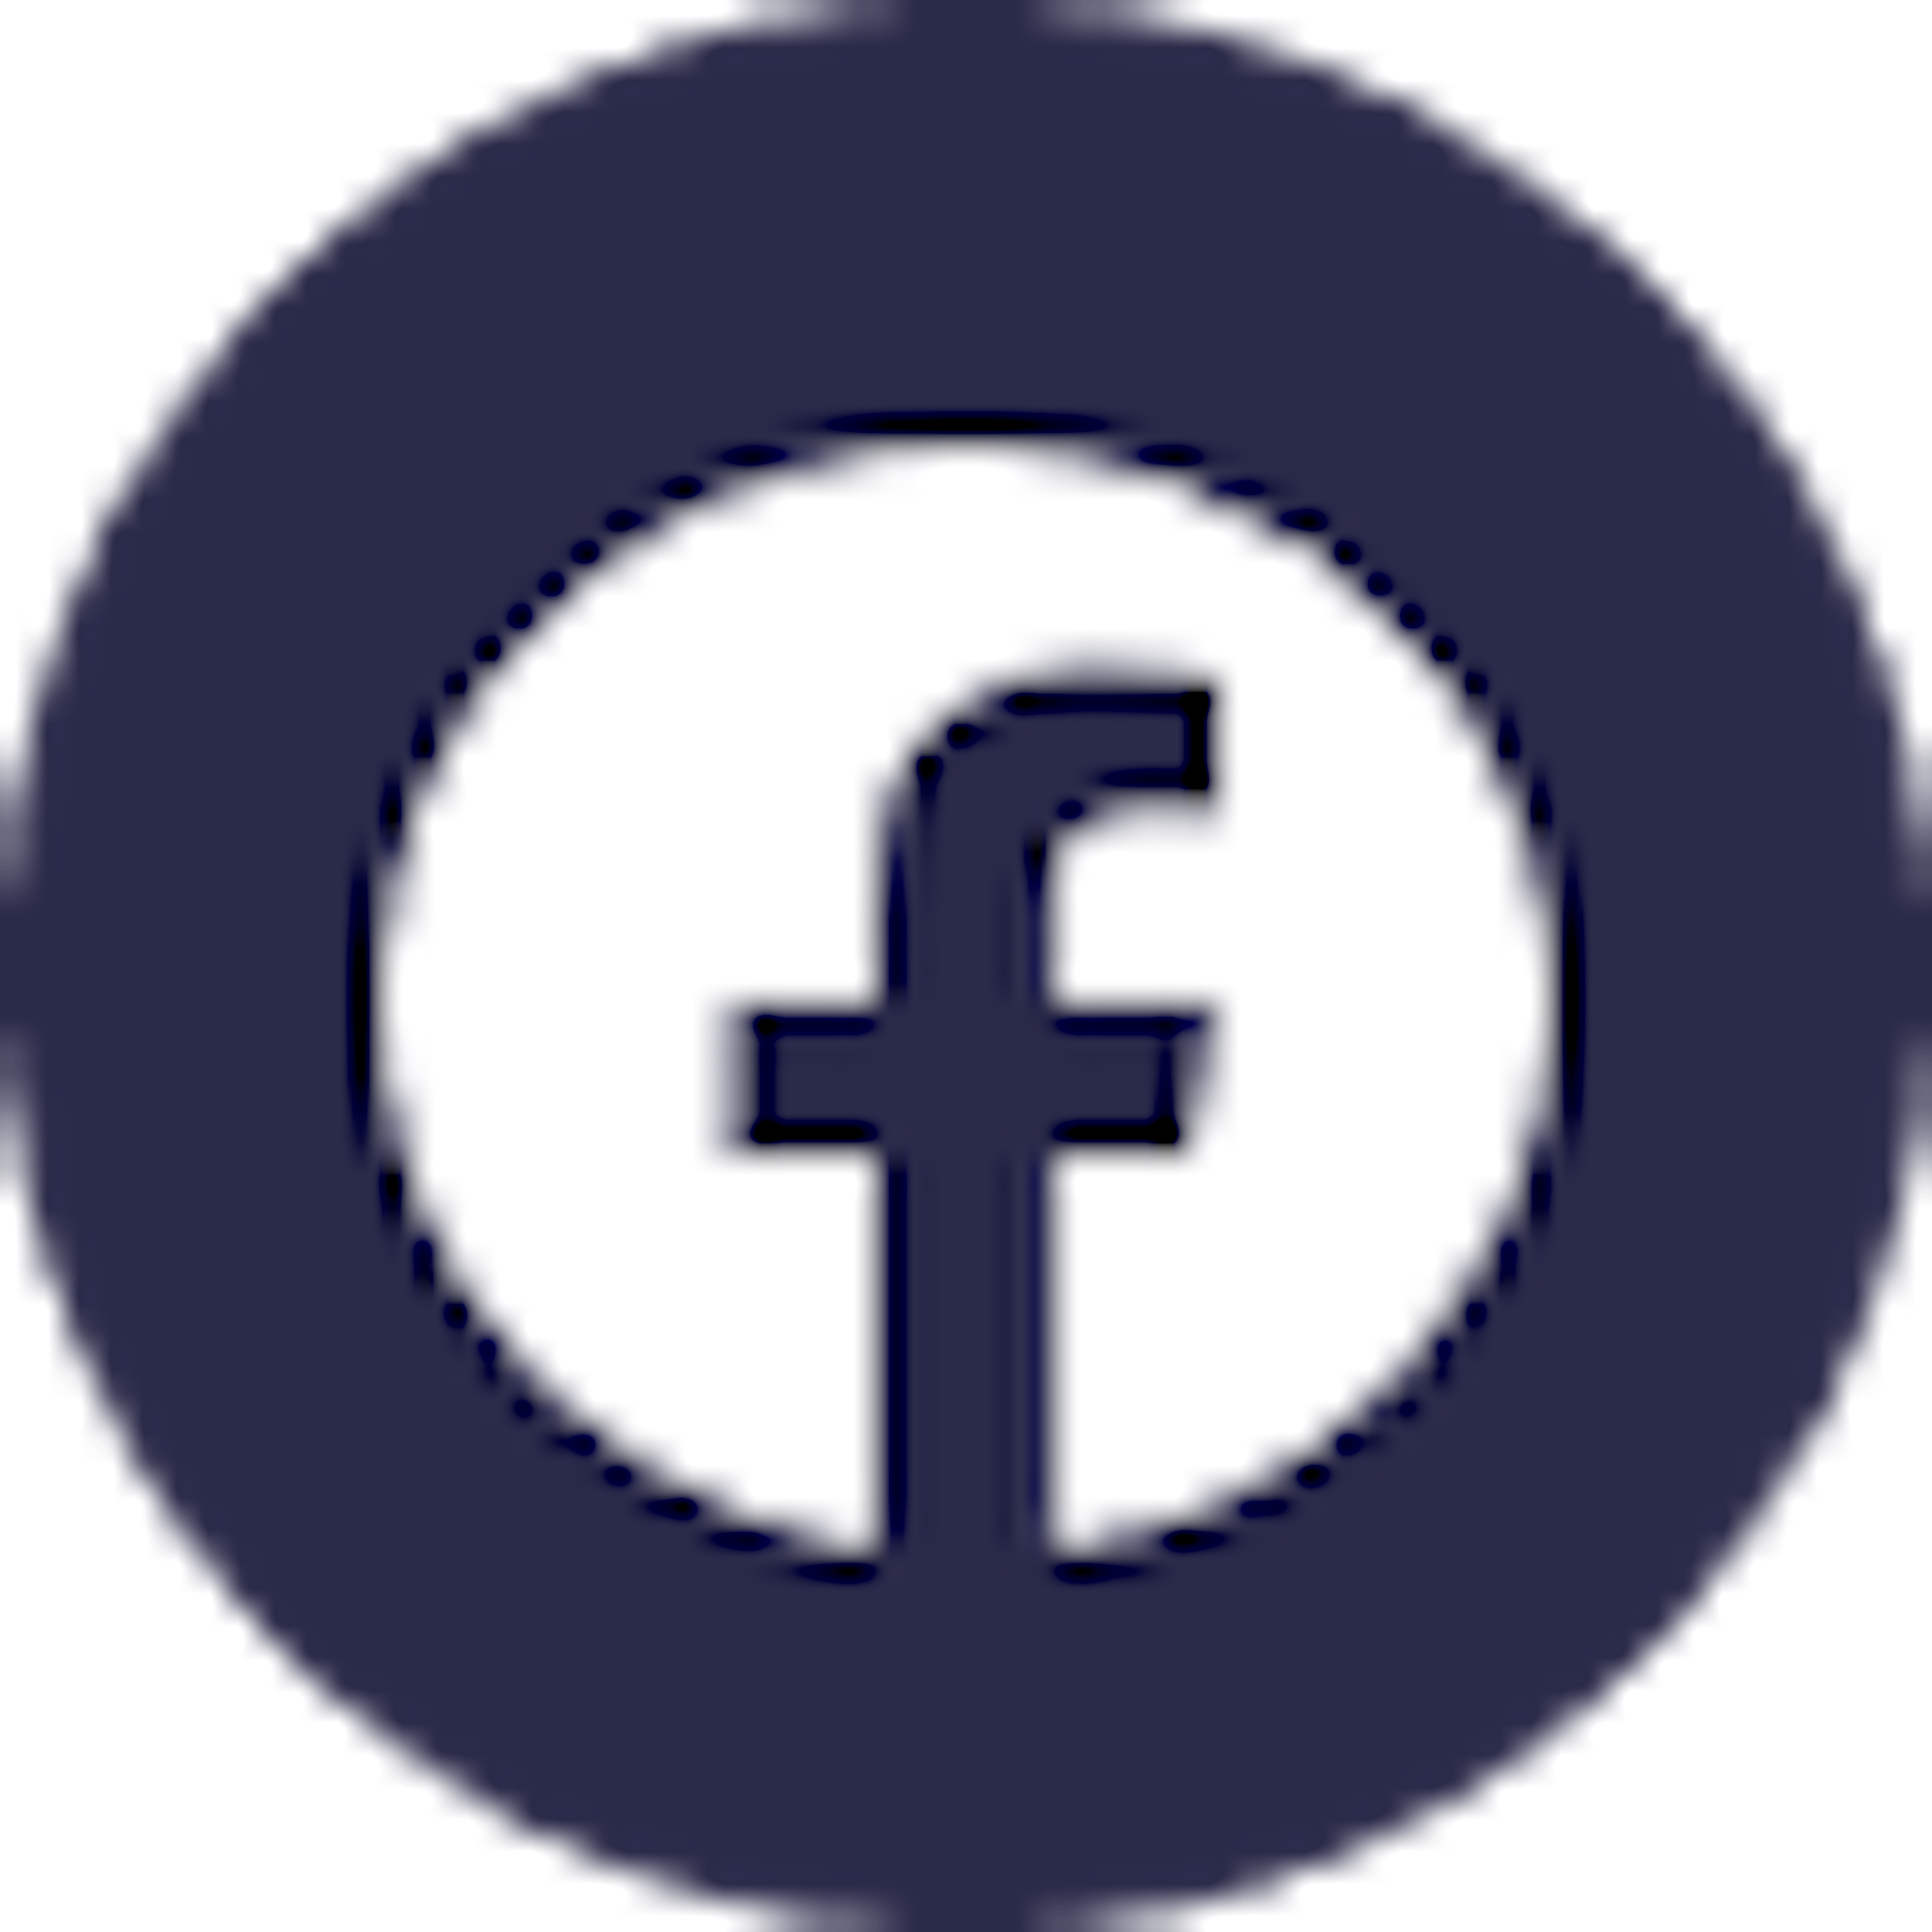 Facebook’s logo.